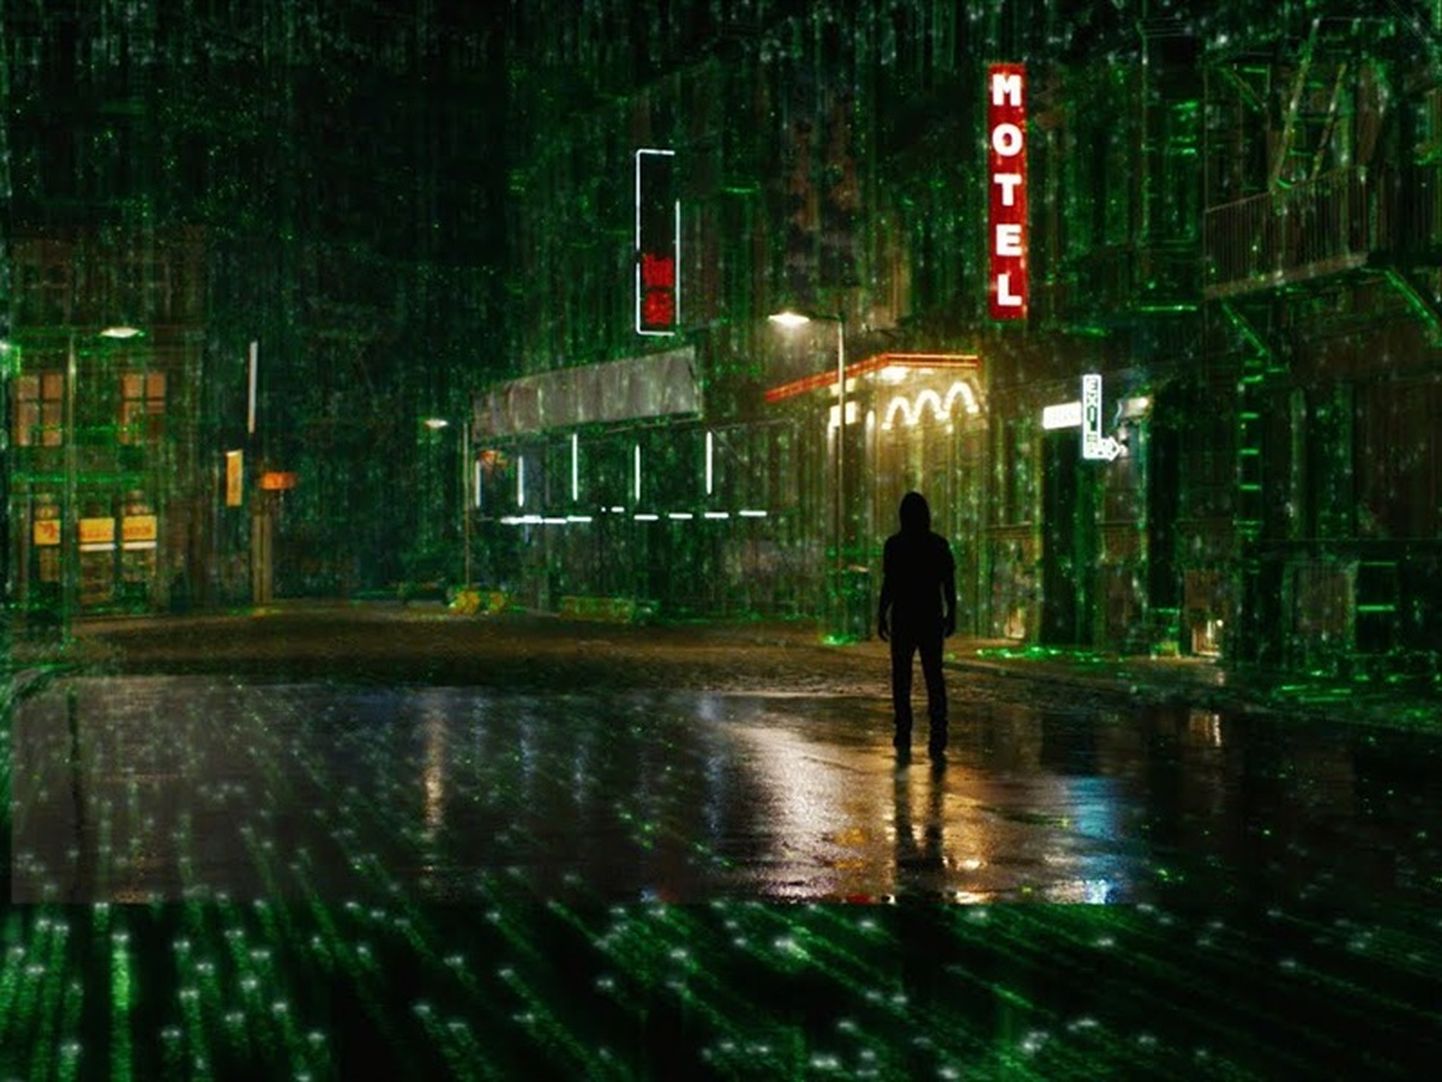 Centrumi kinos linastub teiste filmide hulgas «Matrix: ülestõusmine».